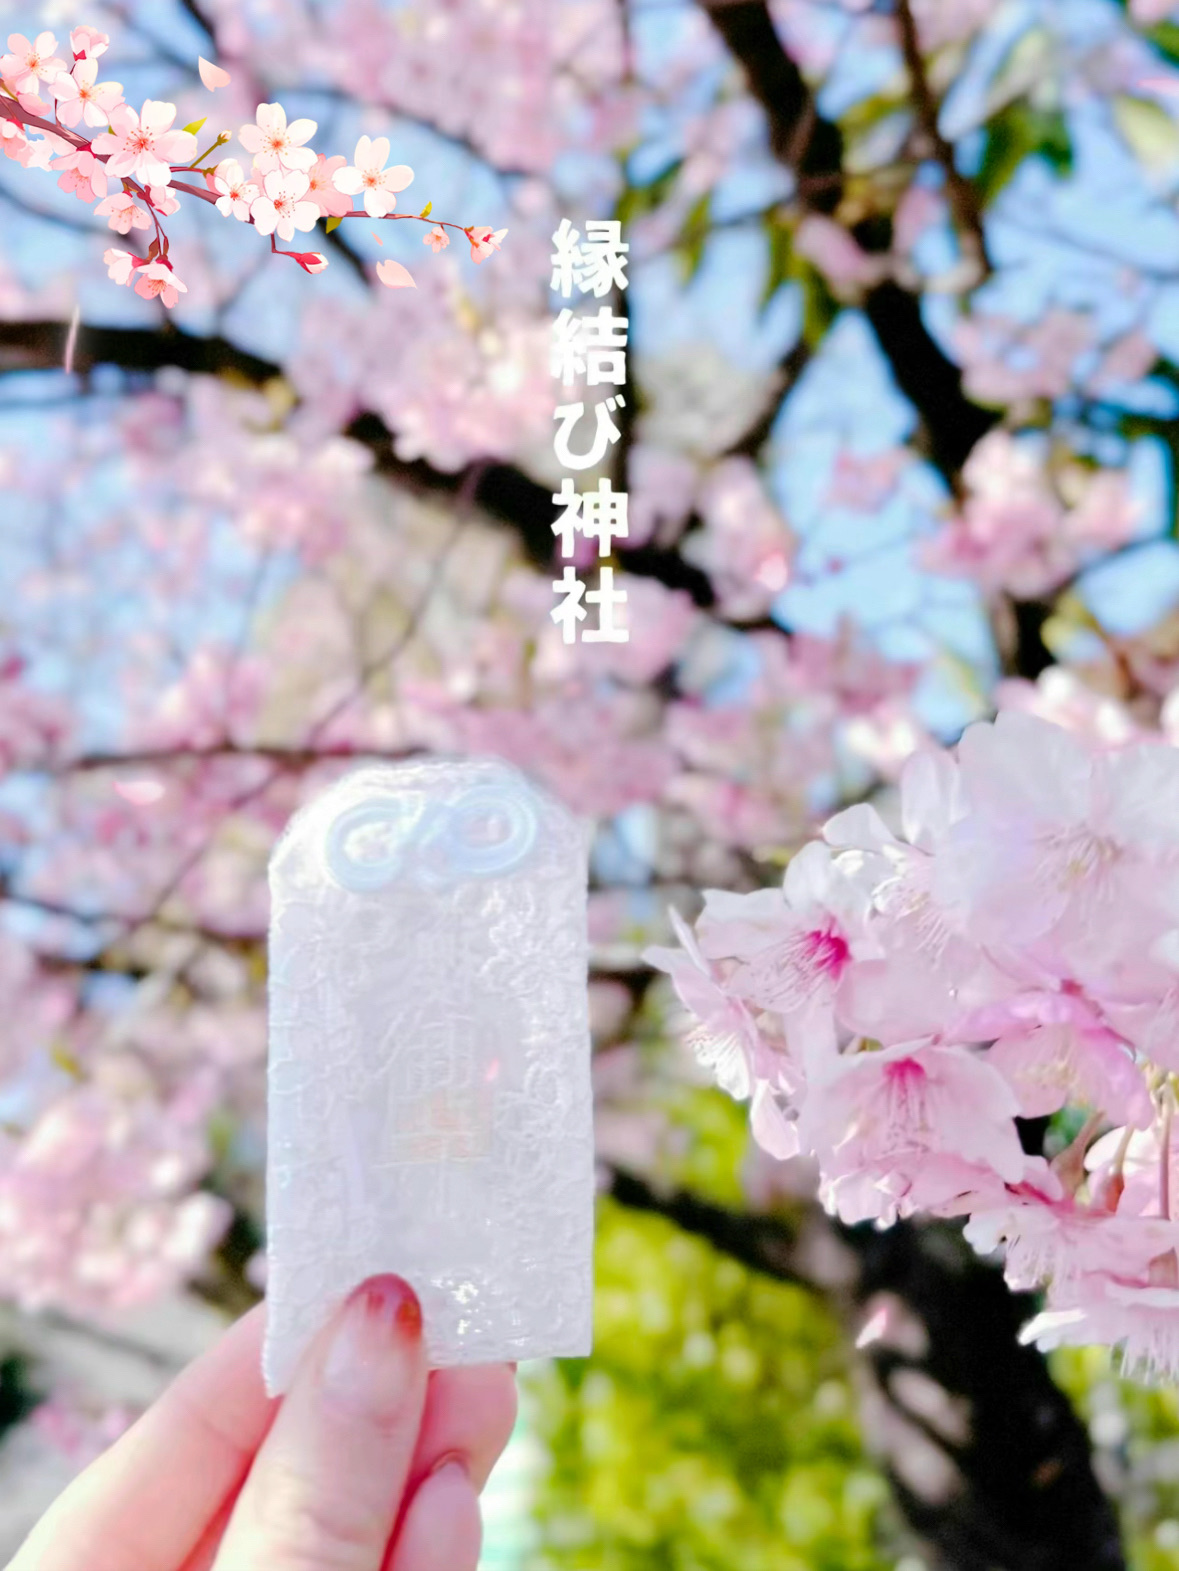 [千叶]我绝对想去! !!神社里满是樱花,太可爱了🌸现在热门的赛车护身符🤍